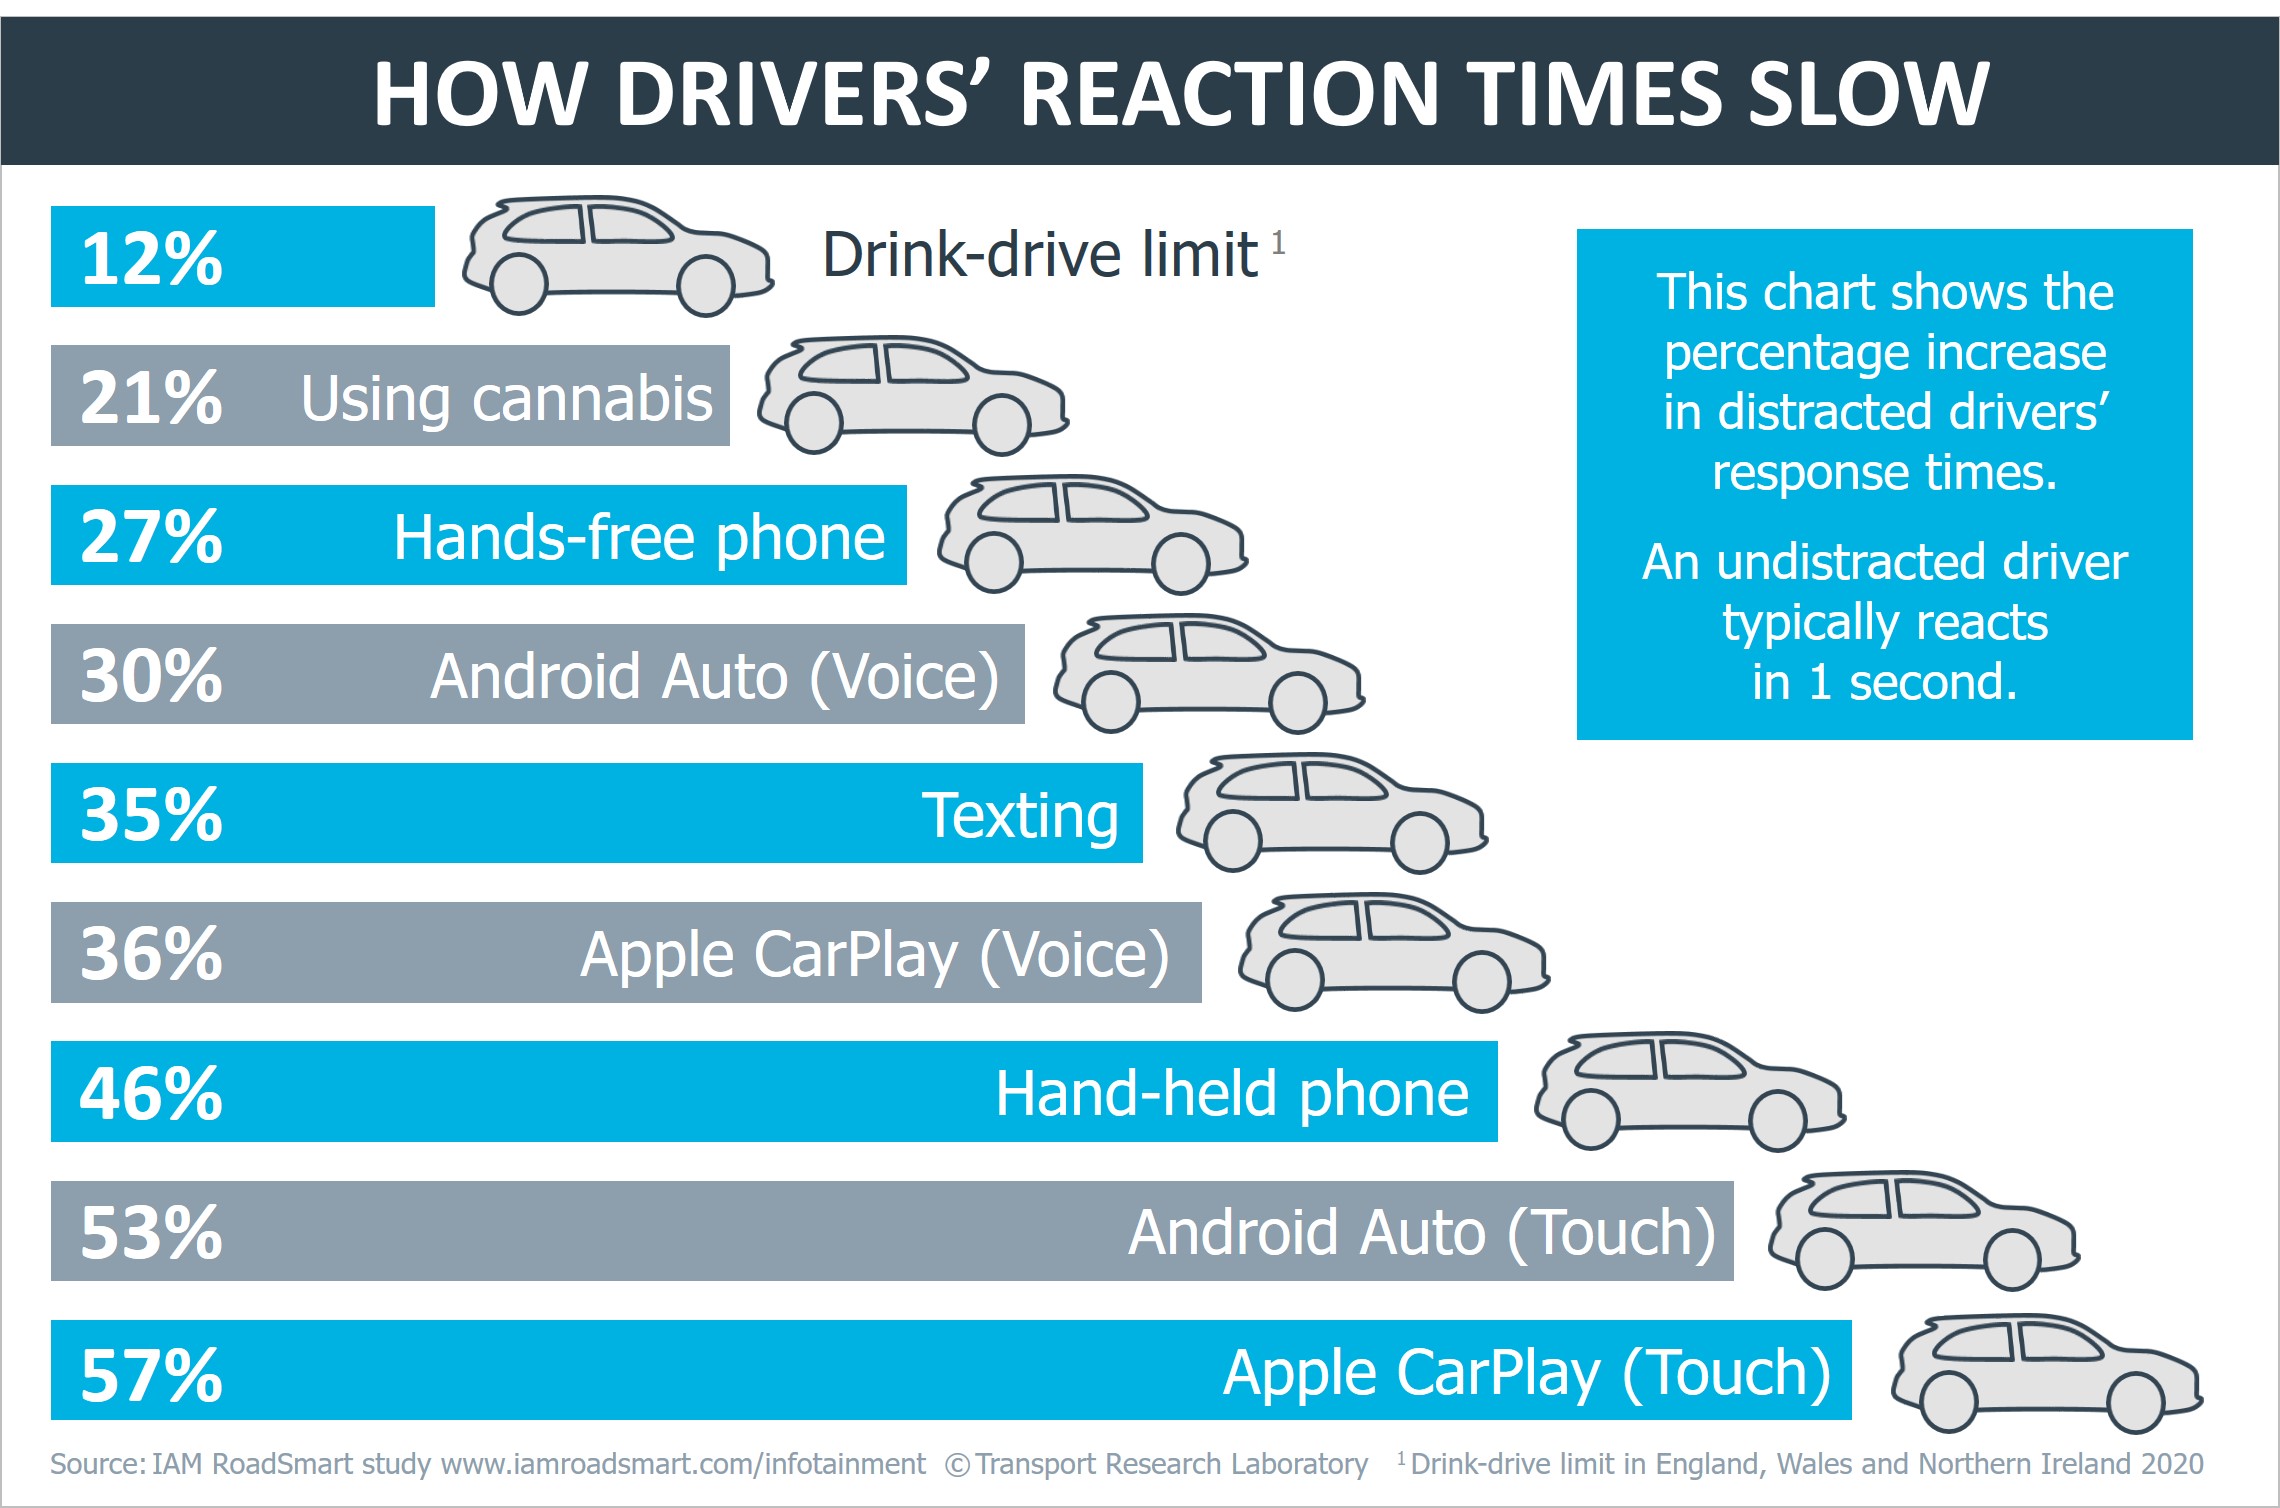 Tỉ lệ phản ứng chậm hơn so với bình thường khi sử dụng màn hình cảm ứng trên xe ô tô so với sử dụng chất kích thích